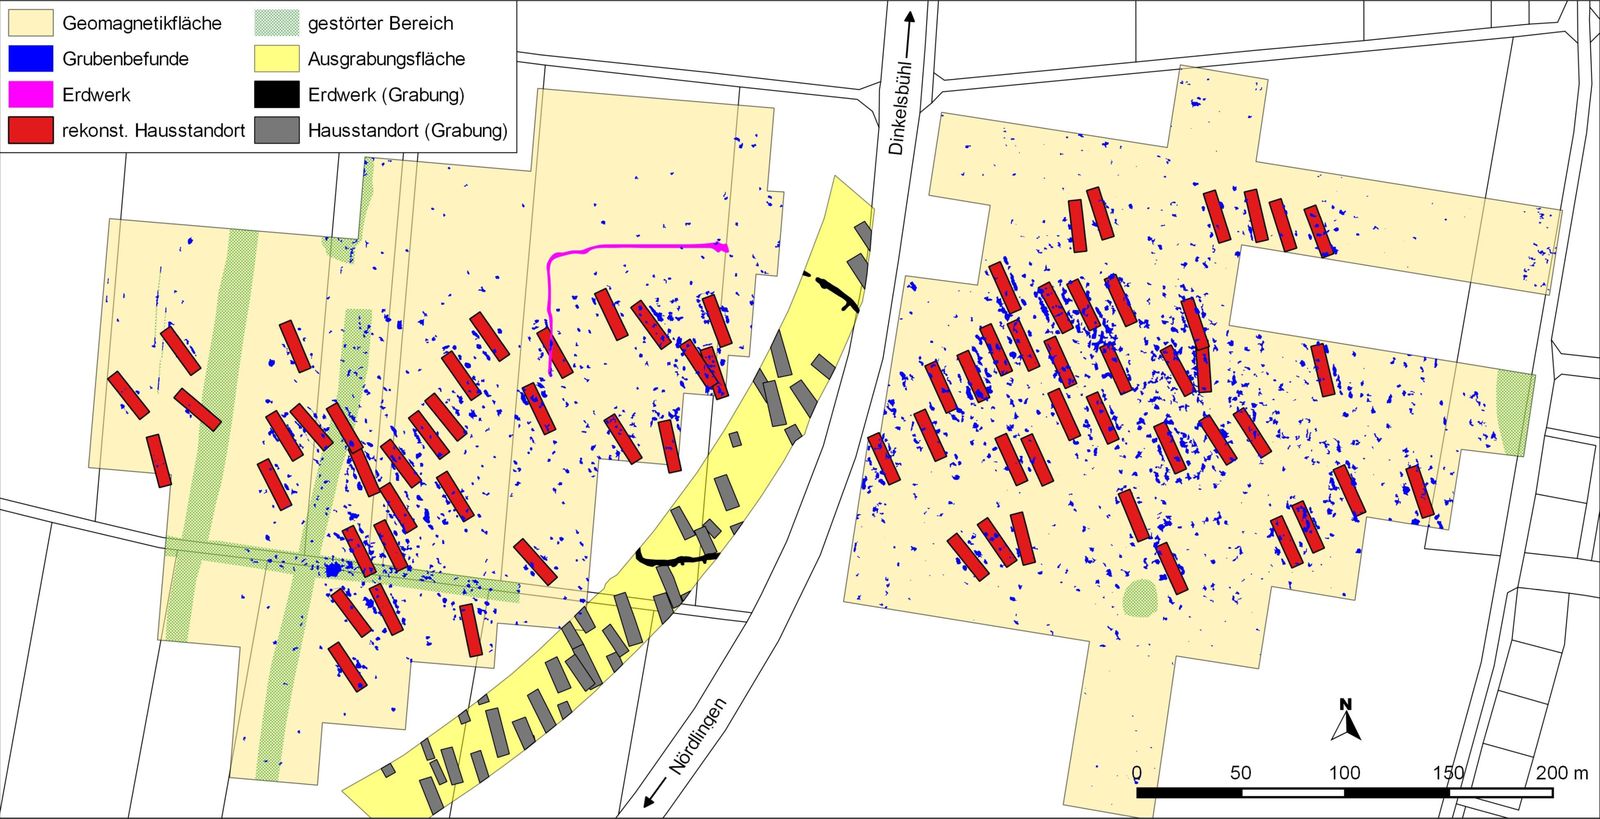 Wallerstein. Geomagnetisch prospektierte Fläche mit Umzeichnung der Grubenbefunde, des Erdwerkes sowie der rekonstruierten Hausstandorte.